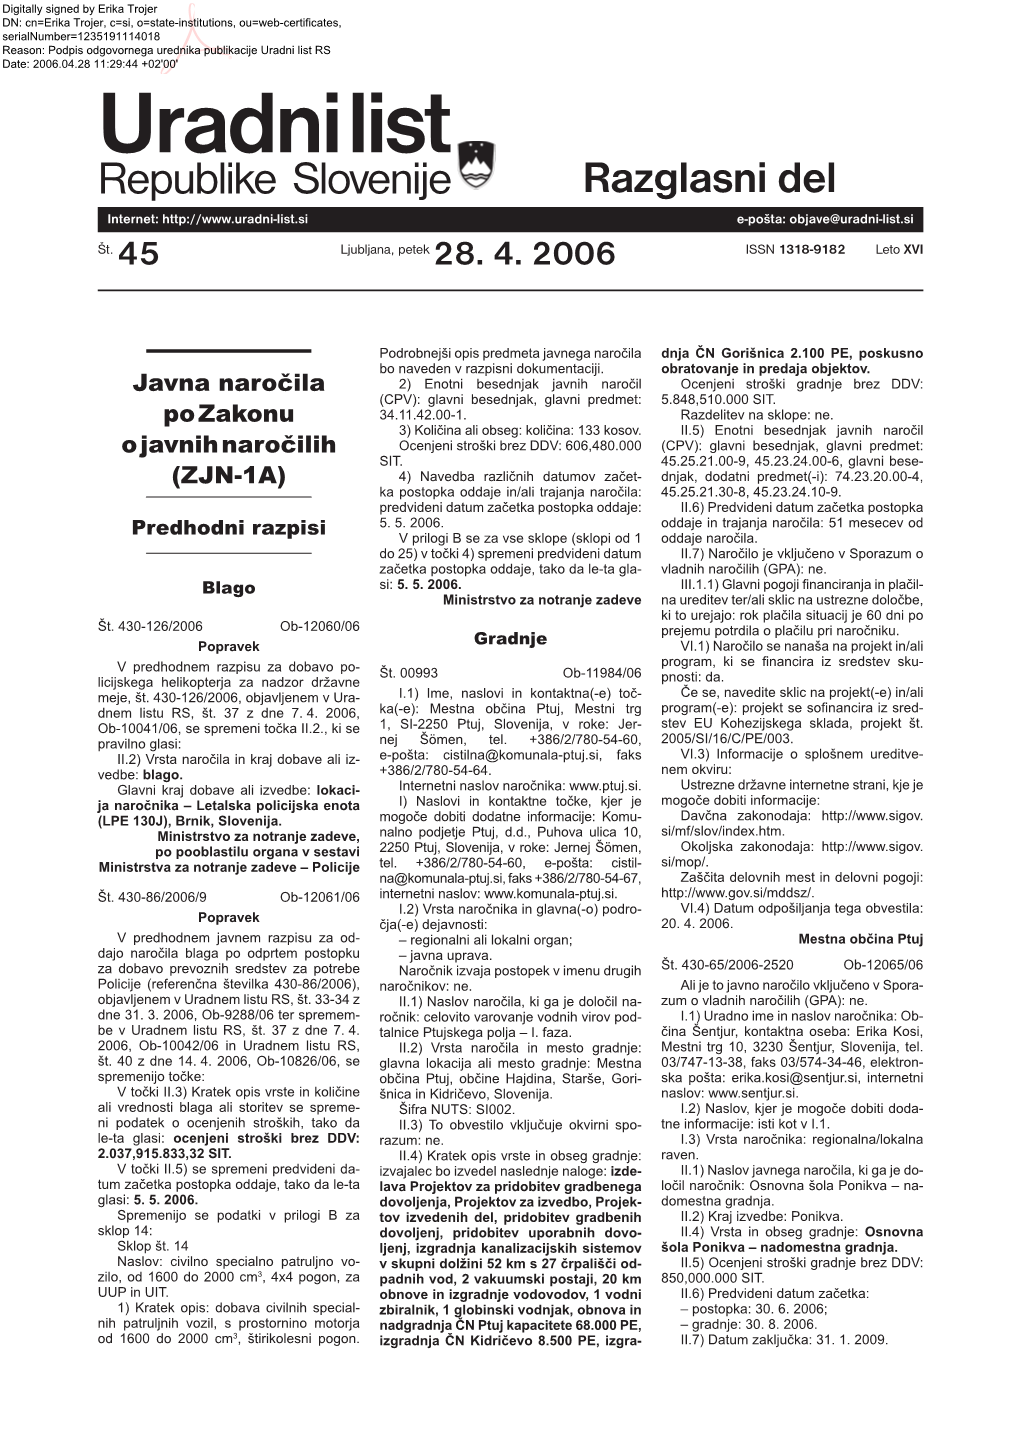 45/2006, Razglasni